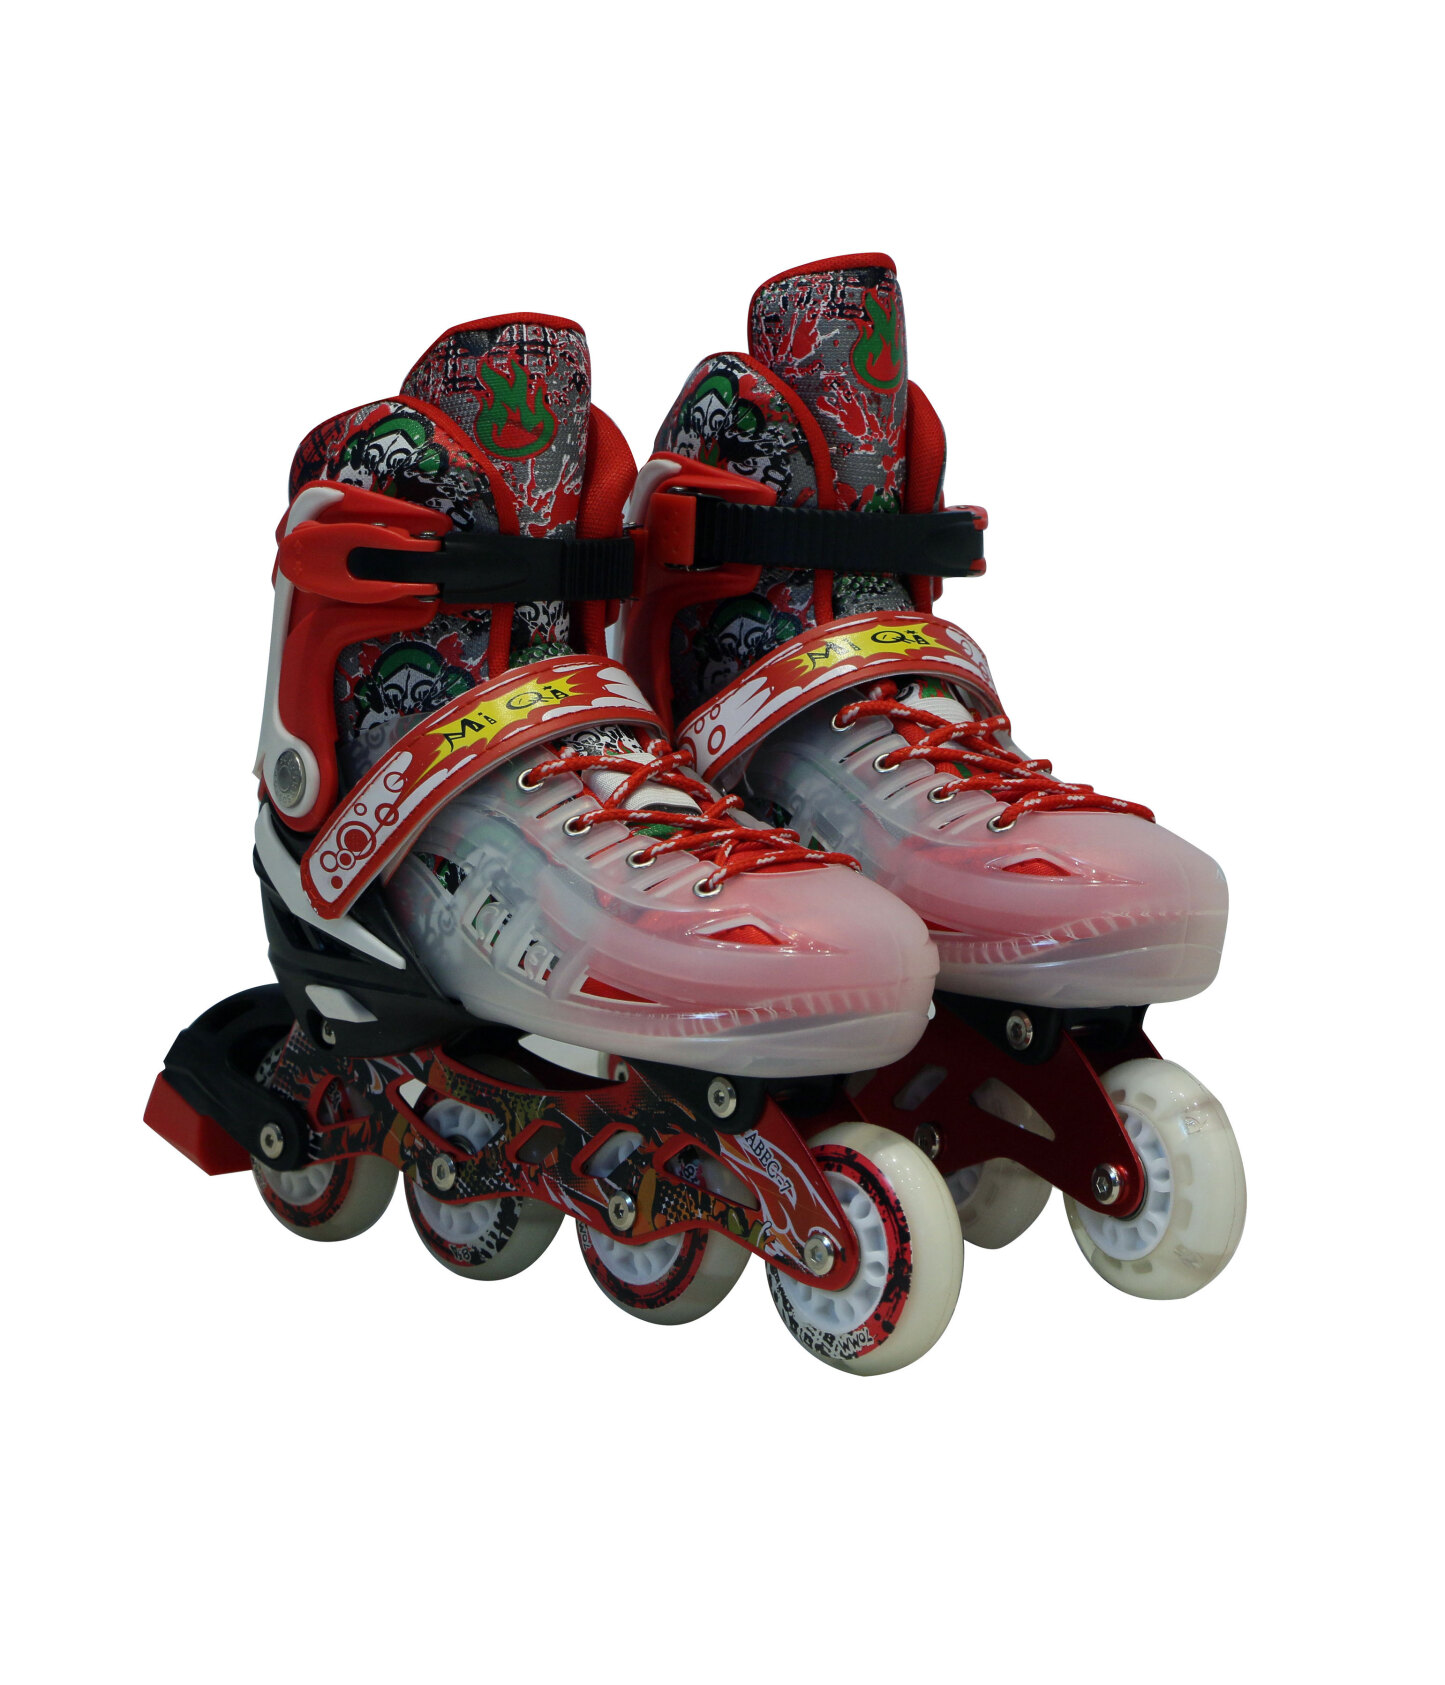  اسکیت هارد کیس چهار چرخ لبفا مدل 40-4 رنگ قرمز از نمای جلو مناسب تفریح و ورزش 